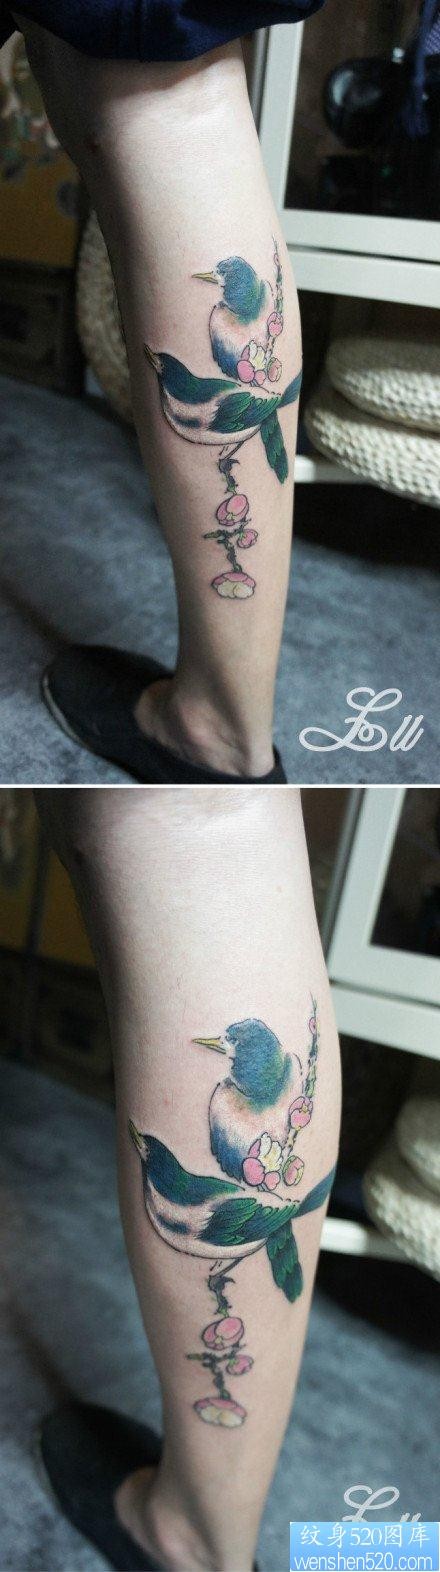 腿部时尚精美的喜鹊梅花纹身图片